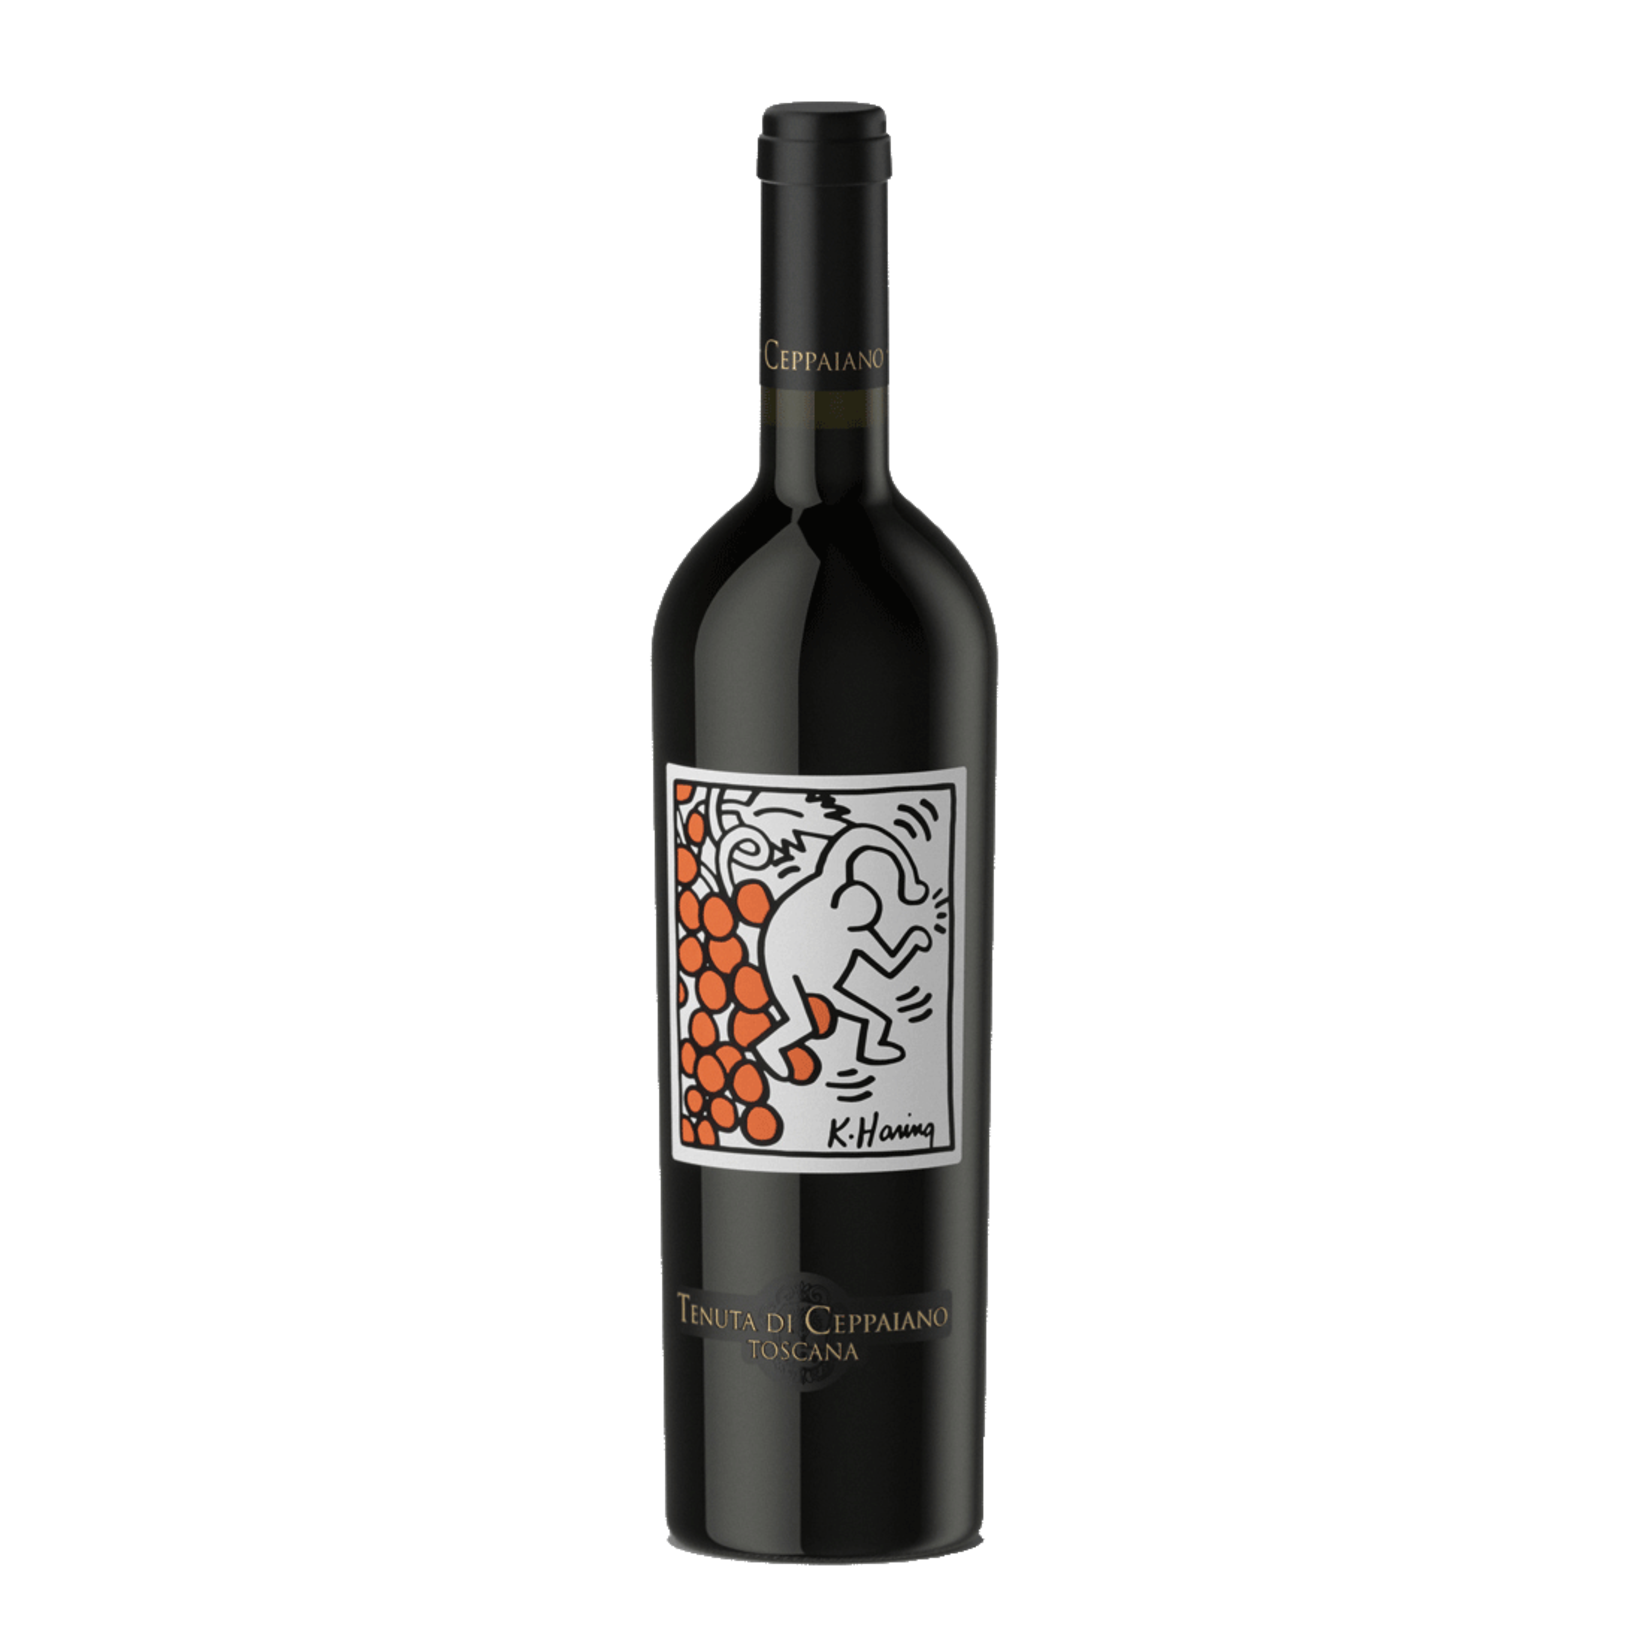 Wine Keith Haring Tenuta di Ceppaiano Toscana 2017